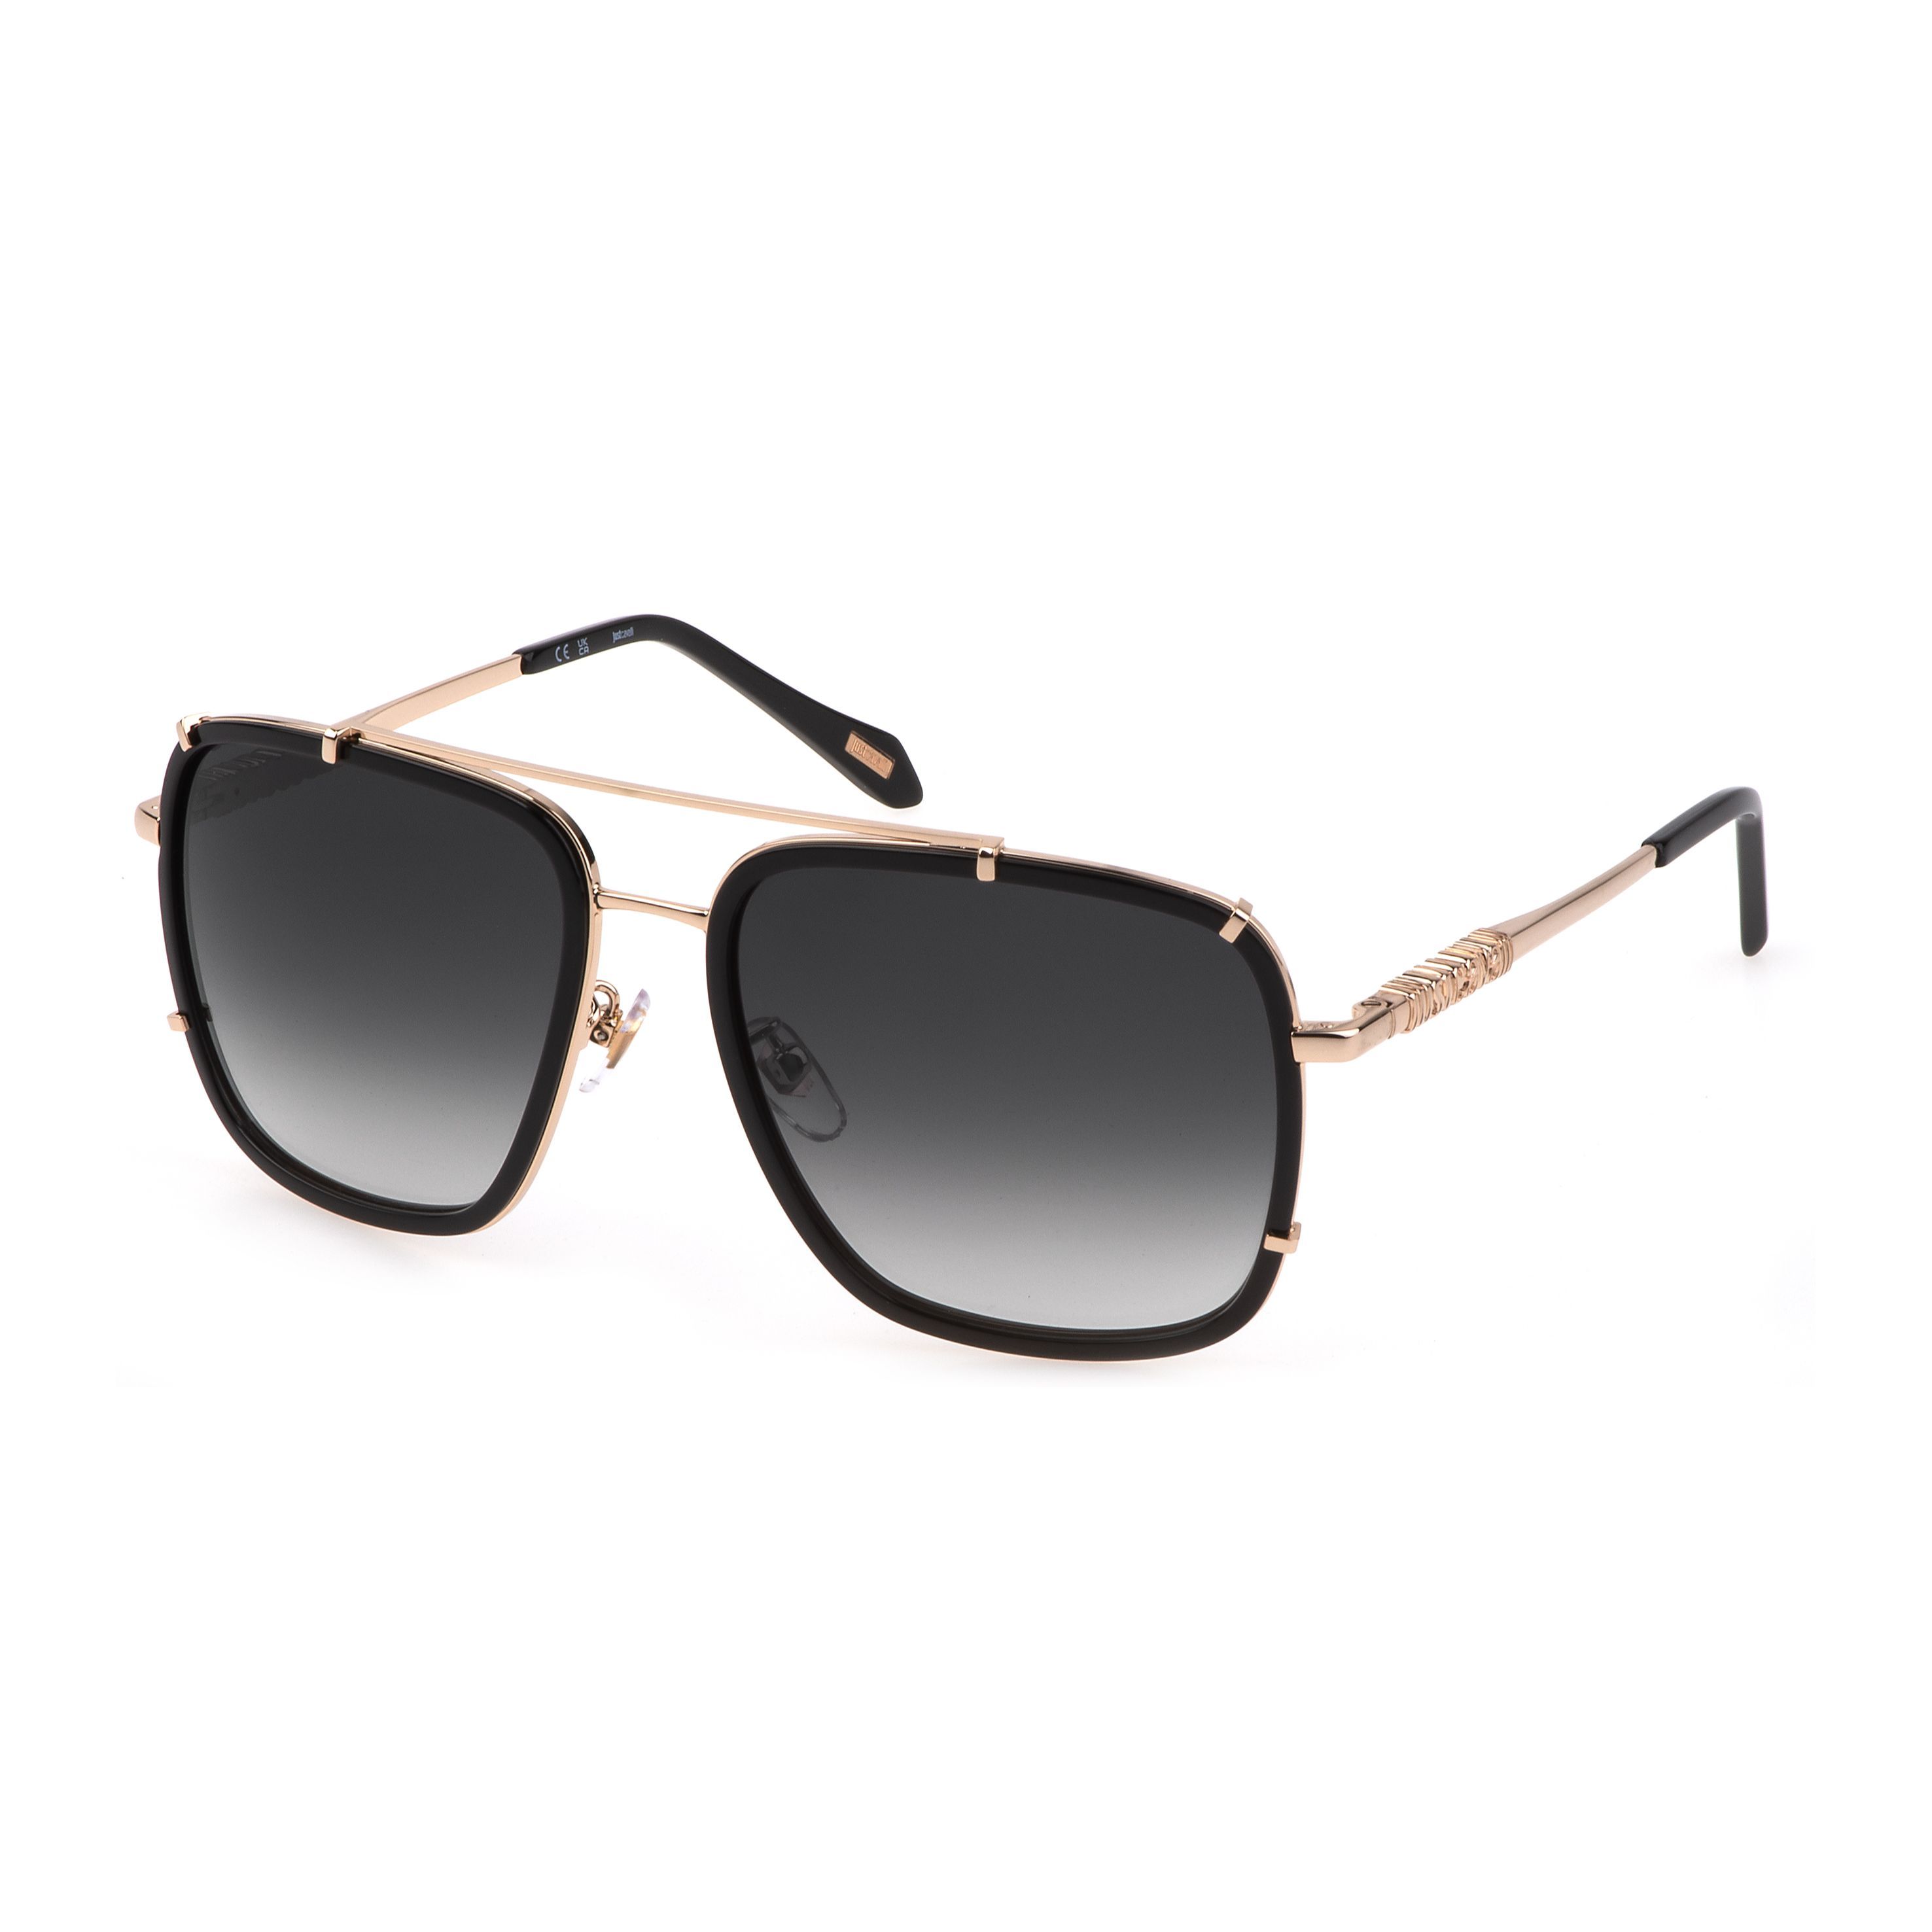 SJC030V Square Sunglasses 700 - size 58